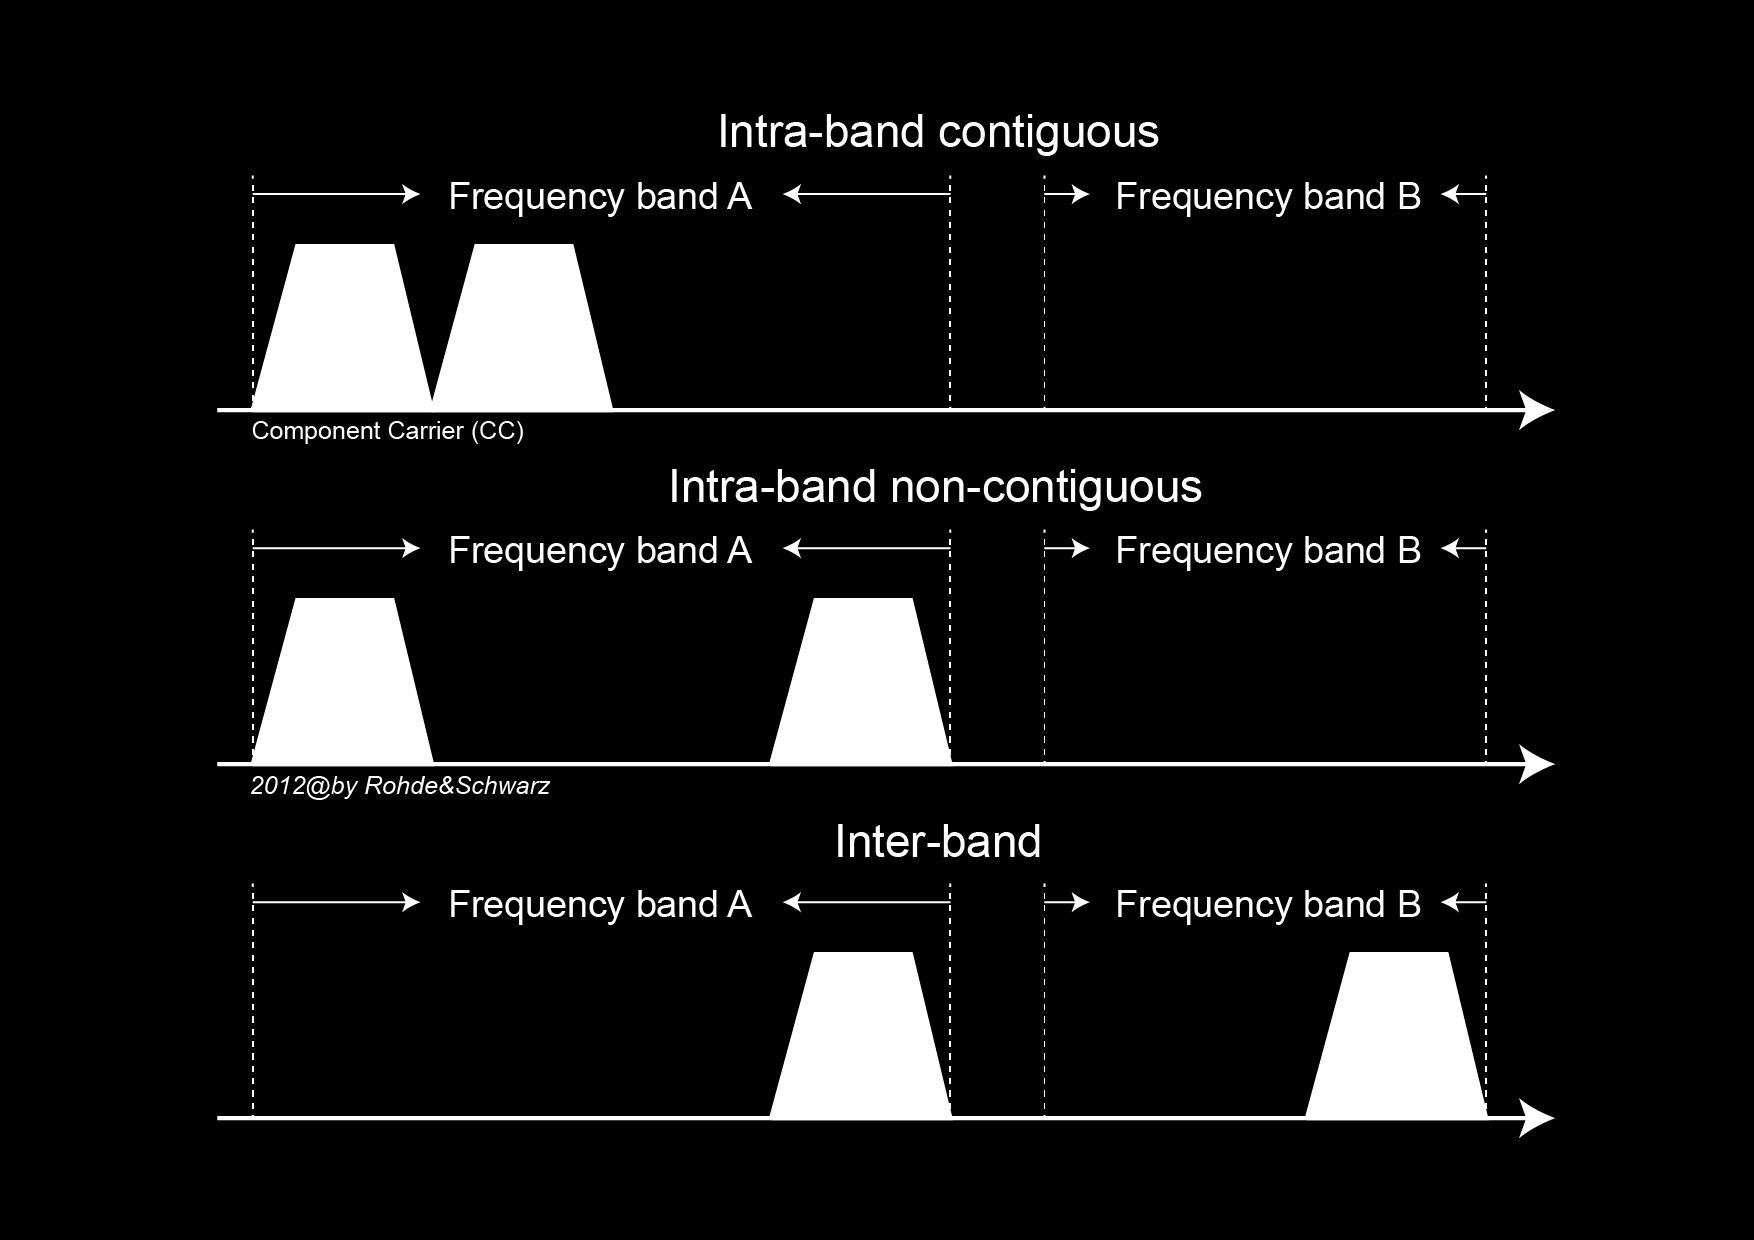 4.2 頻帶彈性分配載波聚合可依頻譜配置方式, 區分為同頻連續 (Intra-band contiguous) 同頻非連續(intra-band non-contiguous) 與異頻載波 (inter-band) 分配三種, 如圖 4 所示, 其中連續載波聚和中, 為了向下支援符合 Rel.